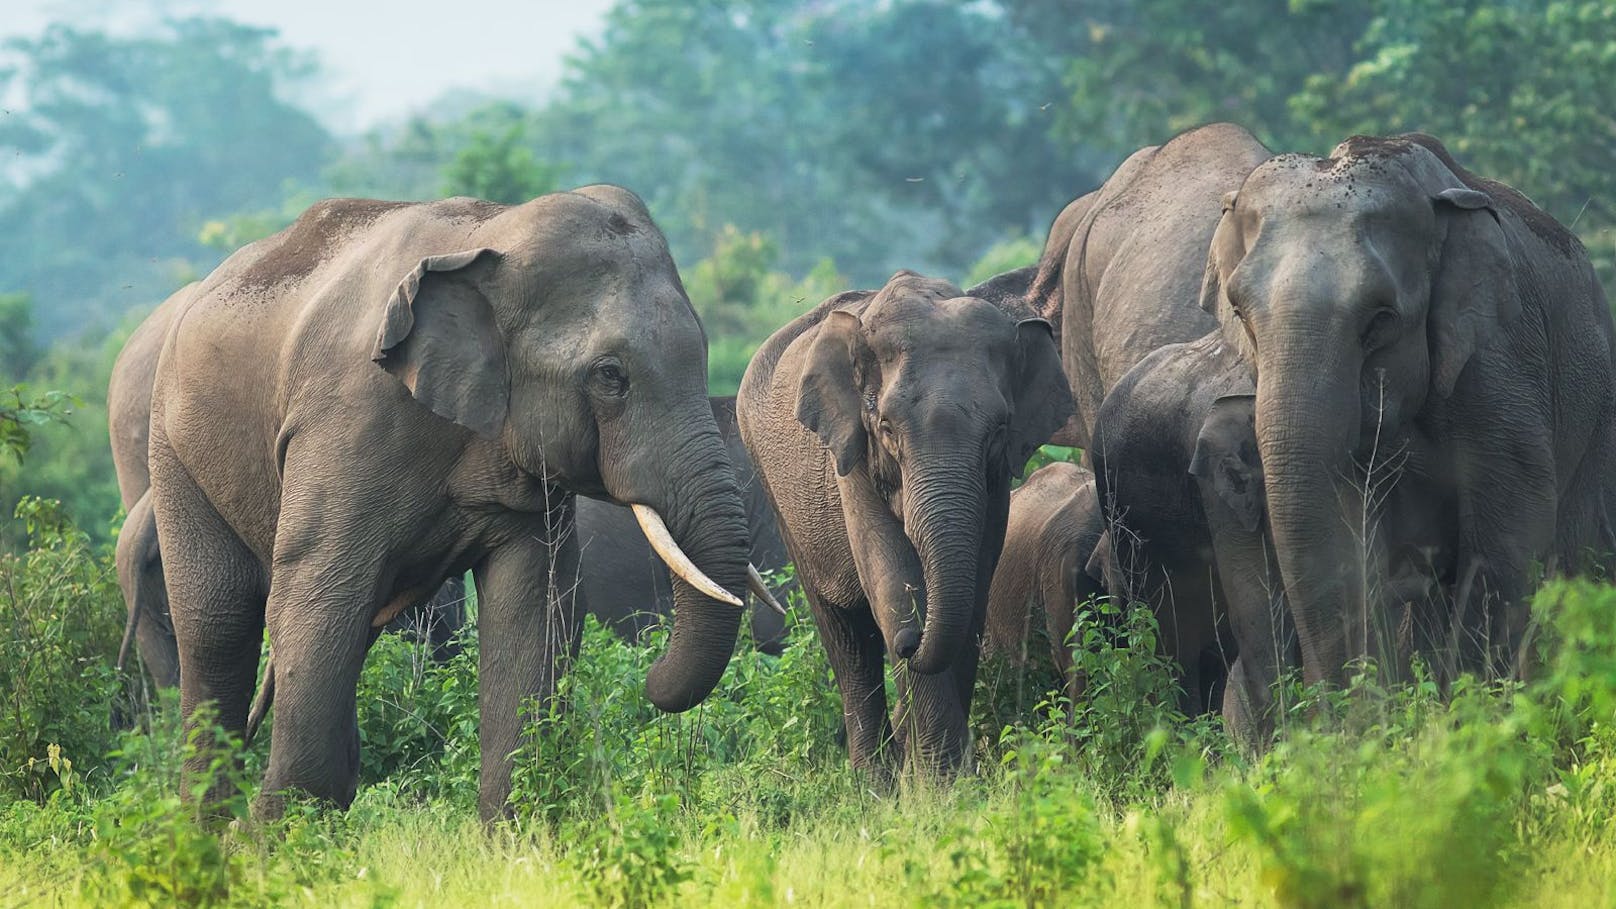 24 Elefanten bedienten sich in Indien am fermetierten Saft für das Schnapsgetränk "Mahua". 